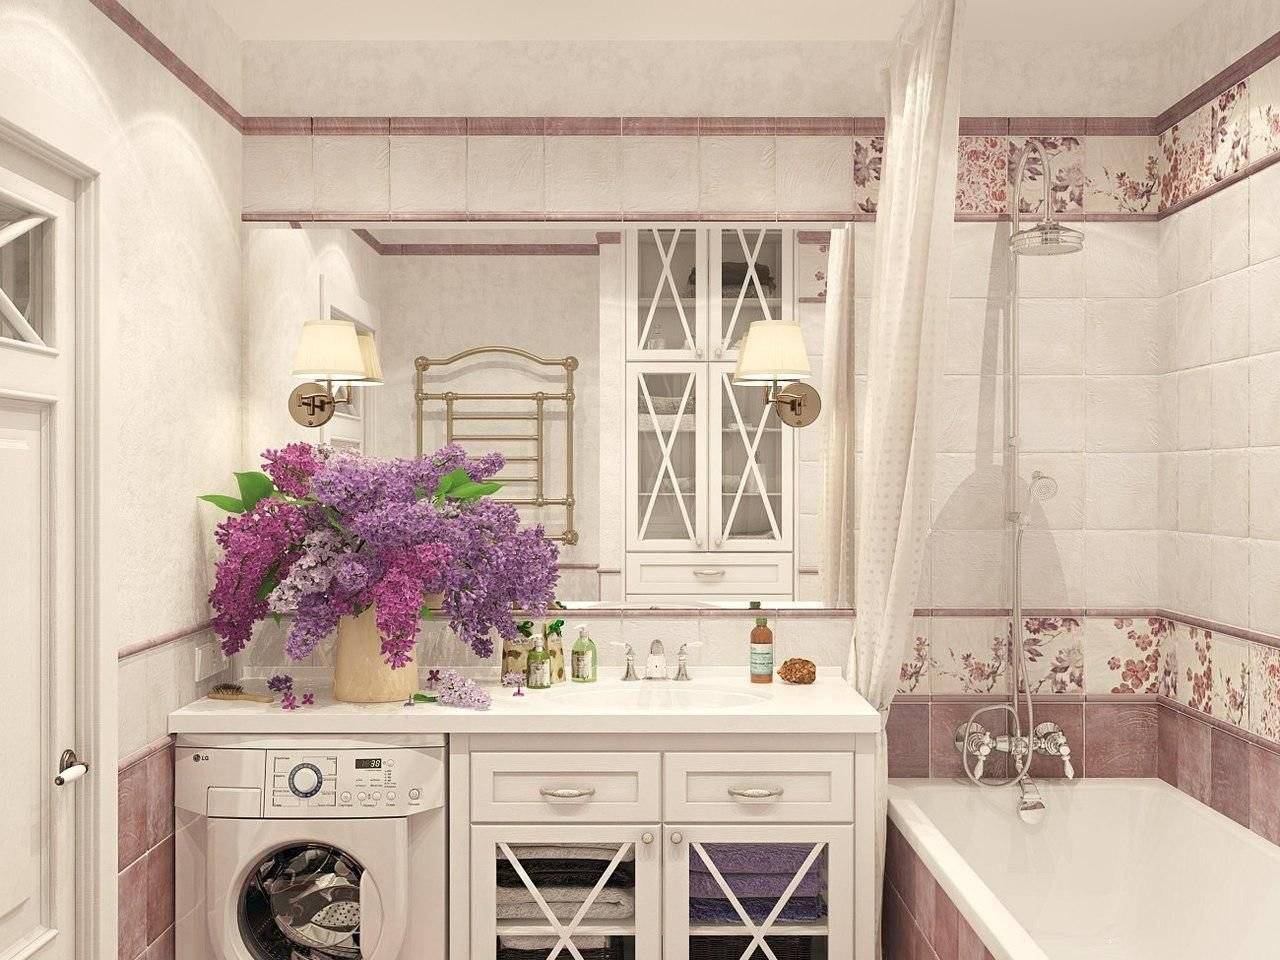 Плитка в стиле прованс для ванной: советы по выбору и укладке панно в стиле прованс, фото интересных идей